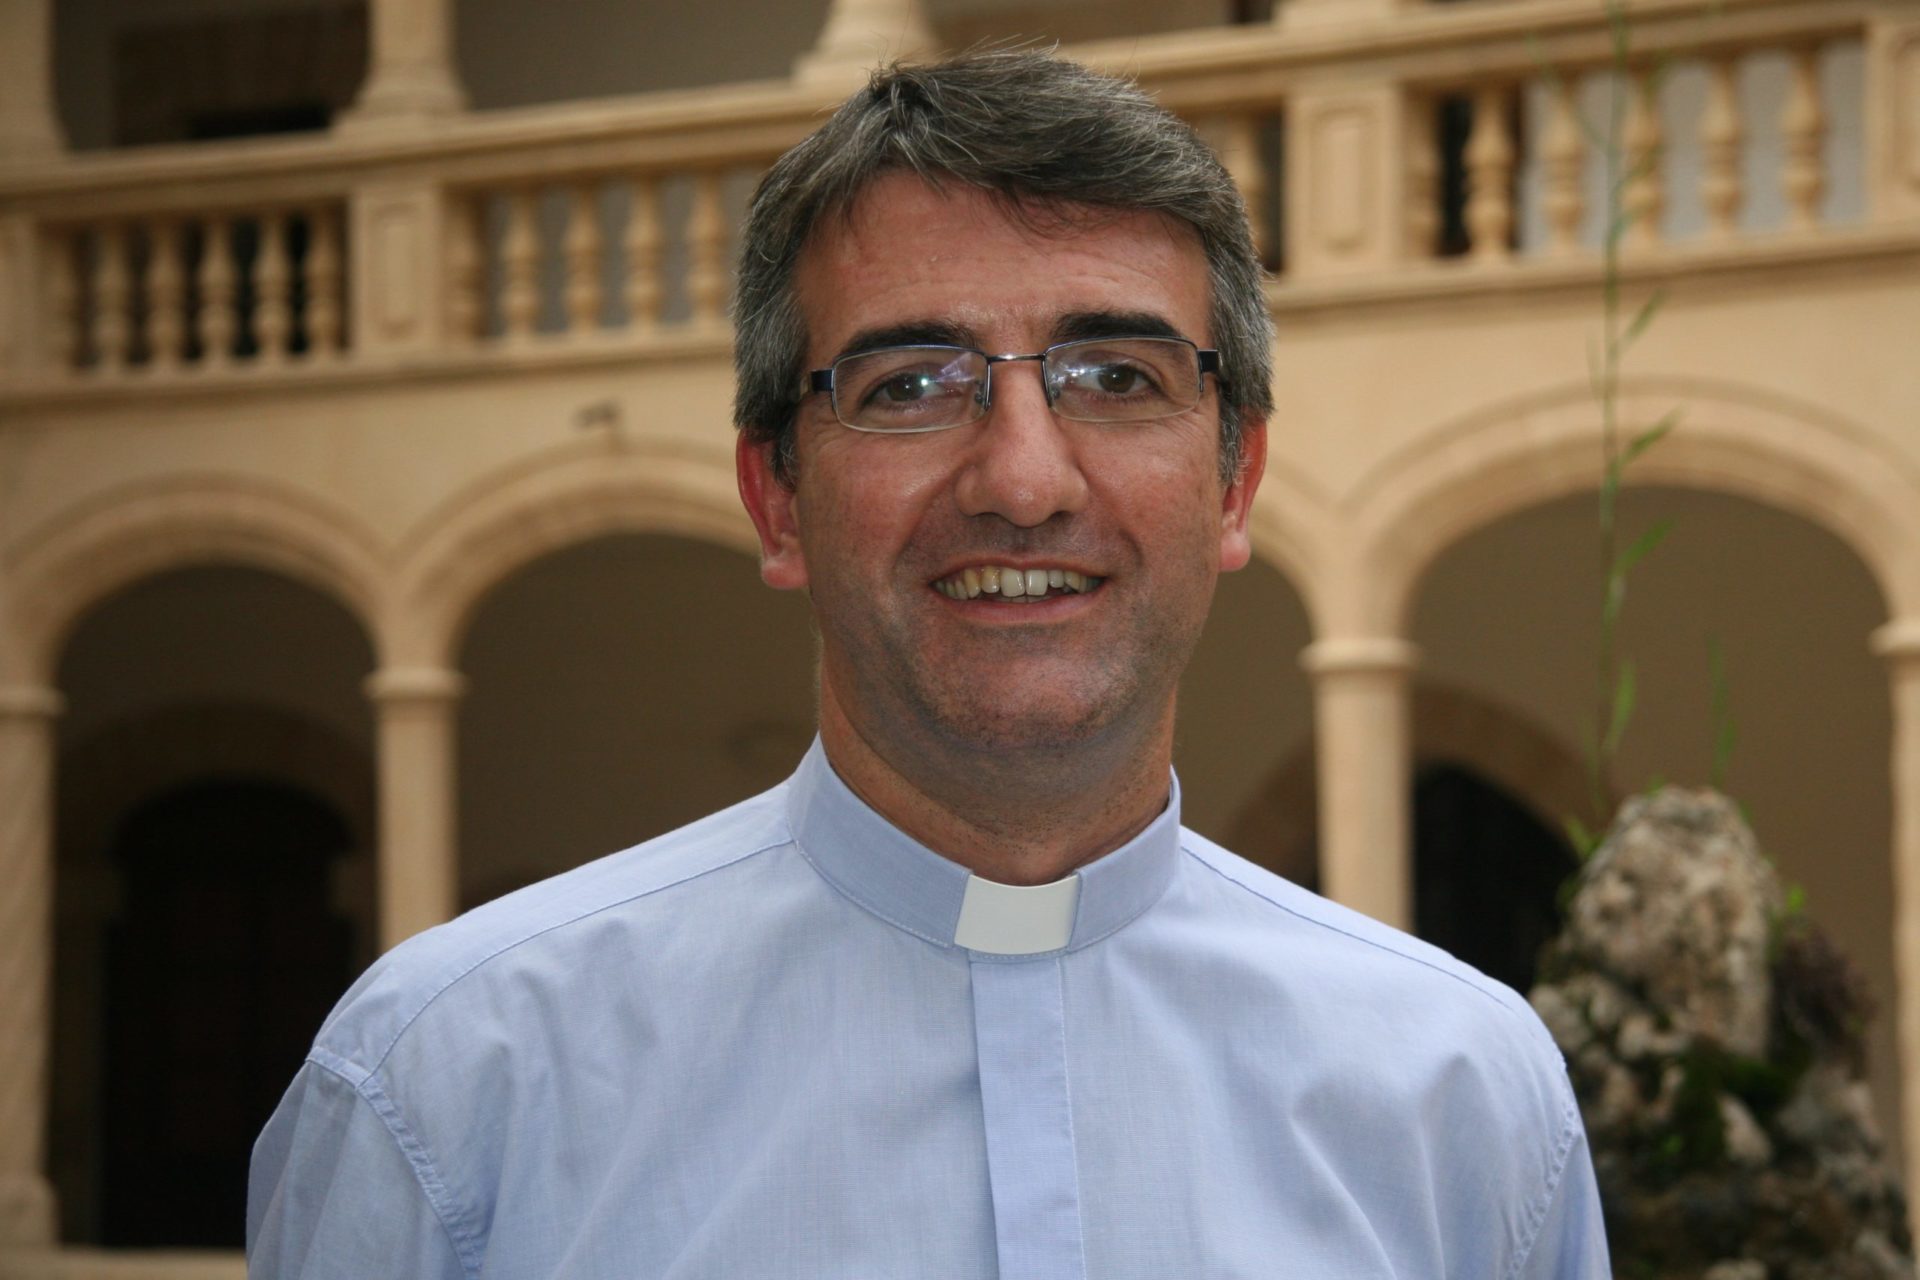 El mallorquín Antoni Vadell, obispo auxiliar de Barcelona, continúa estable dentro de la gravedad